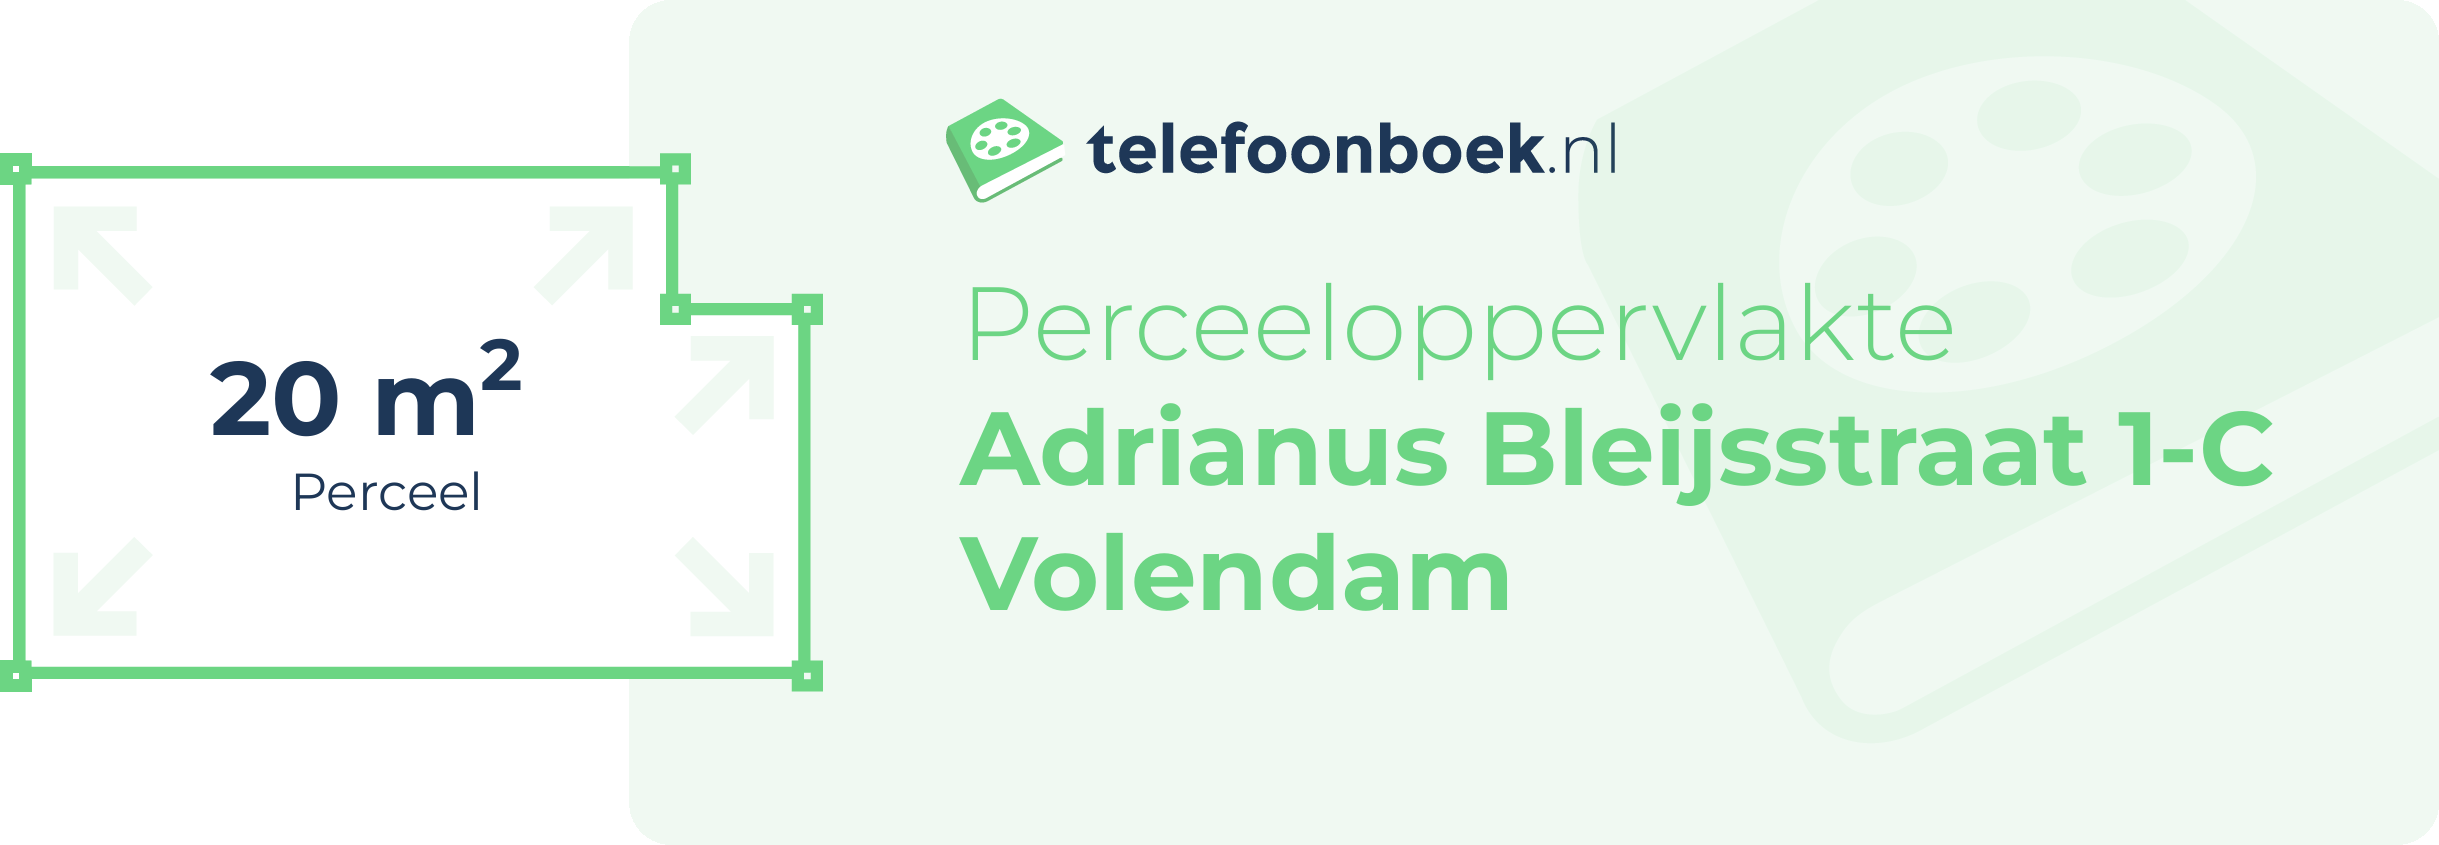 Perceeloppervlakte Adrianus Bleijsstraat 1-C Volendam